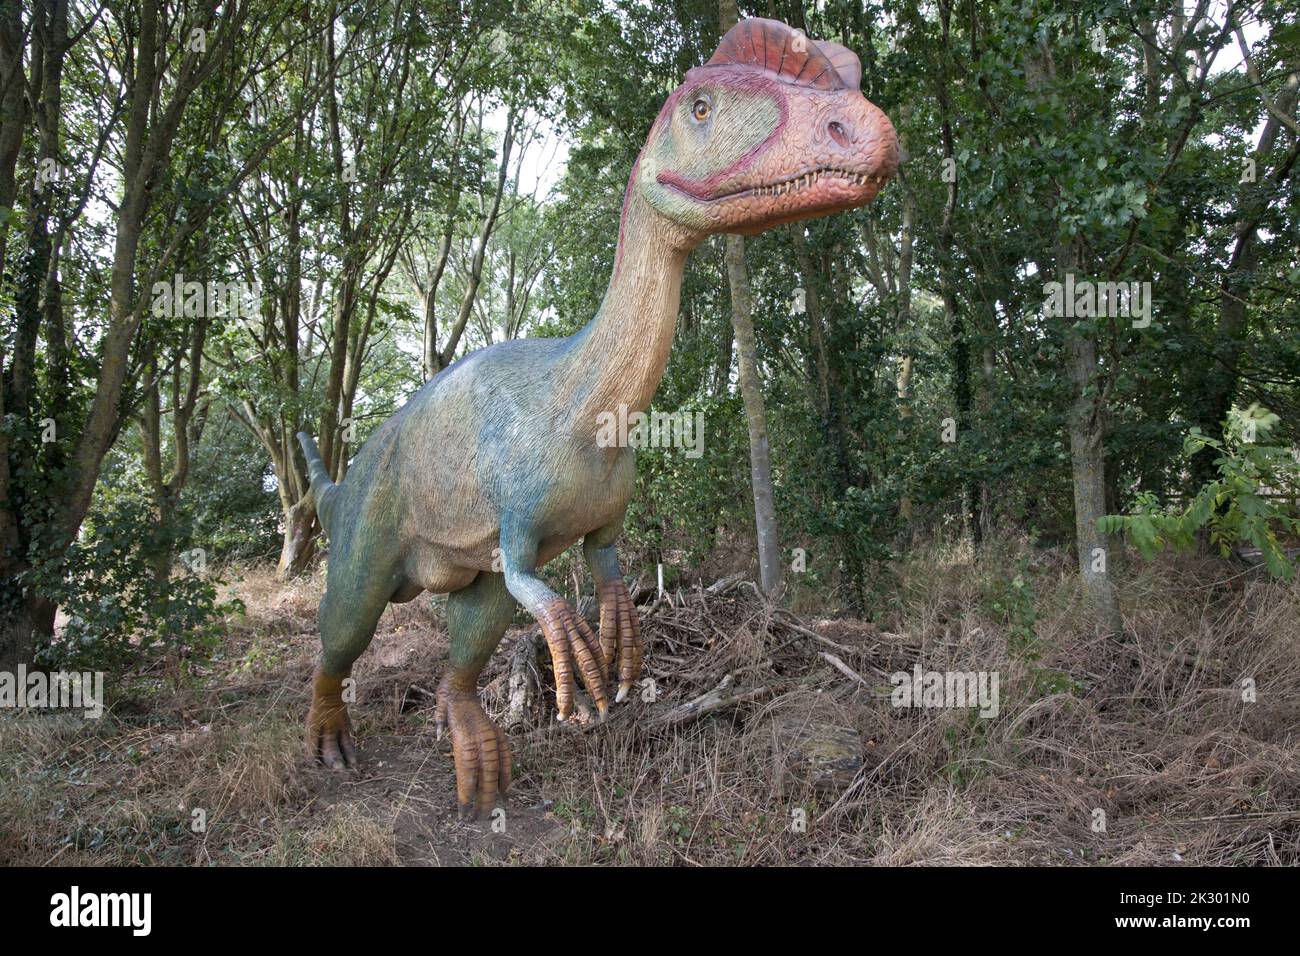 Le modèle LifeSize de Dilosaurus avec deux crêtes osseuses sur sa tête était un dinosaure de viande en mouvement rapide mangeant du Jurassique précoce à toutes choses Wild, Hone Banque D'Images